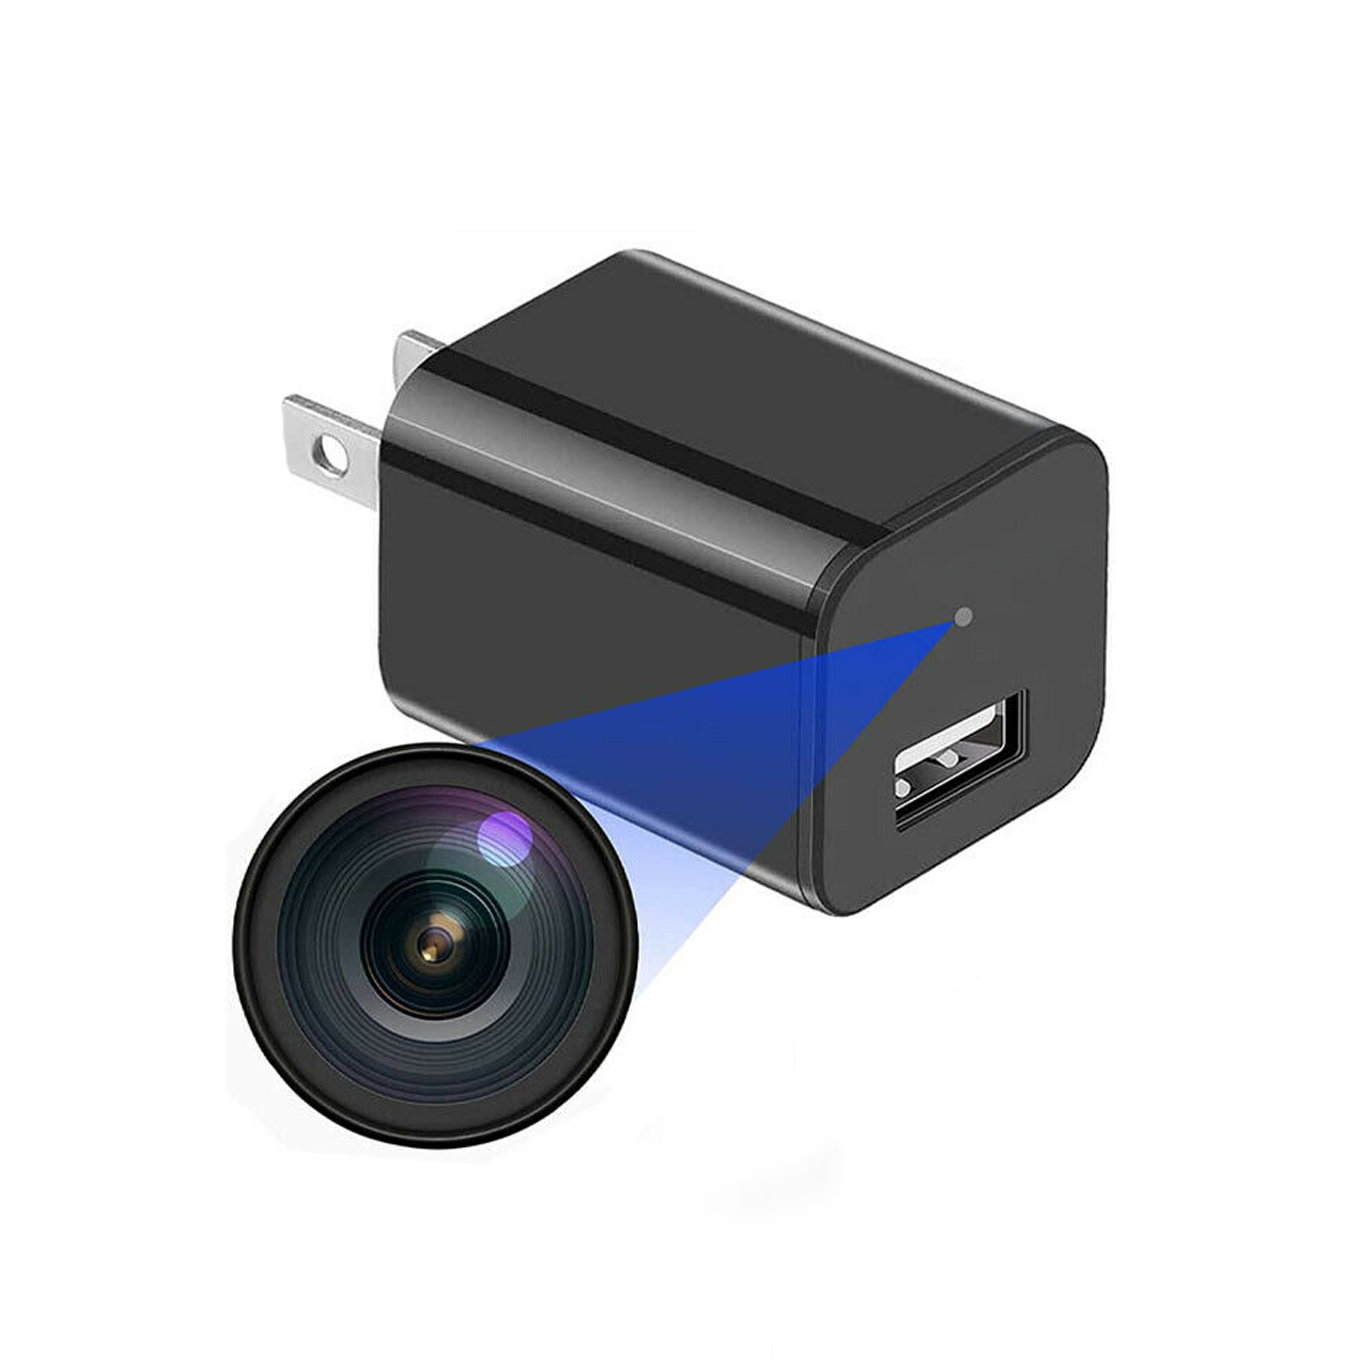 Comprar USB cámara oculta - Precio y descuentos - Cámaras espías